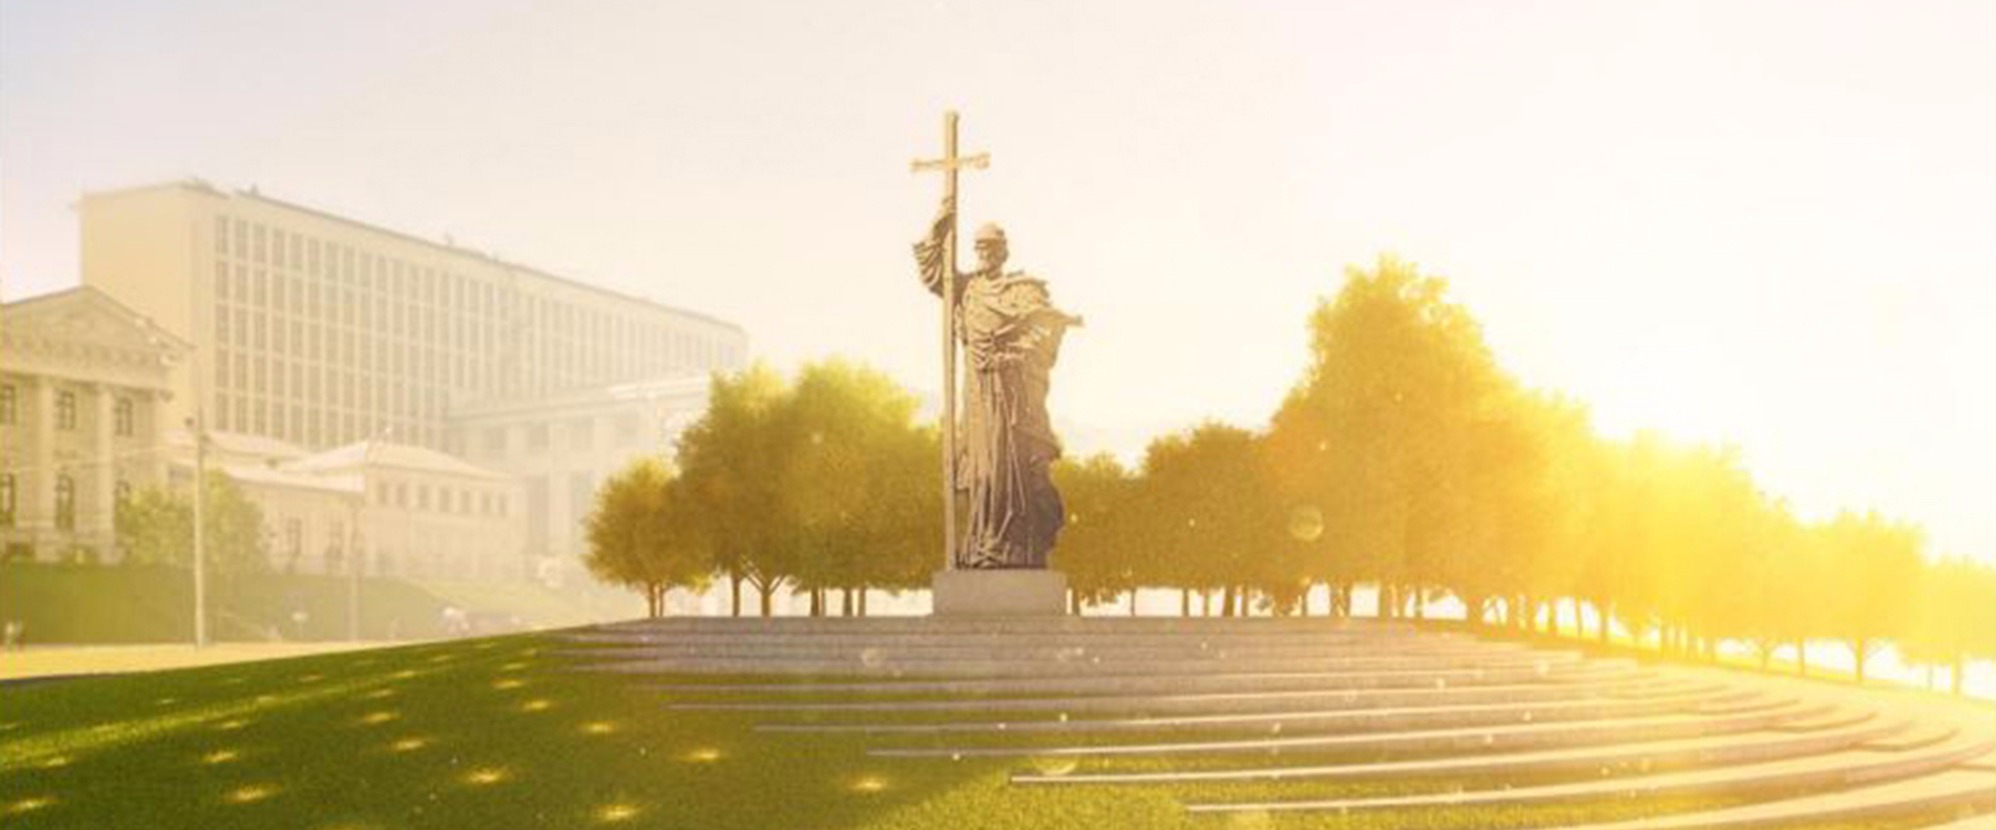 москва боровицкая площадь памятник владимиру